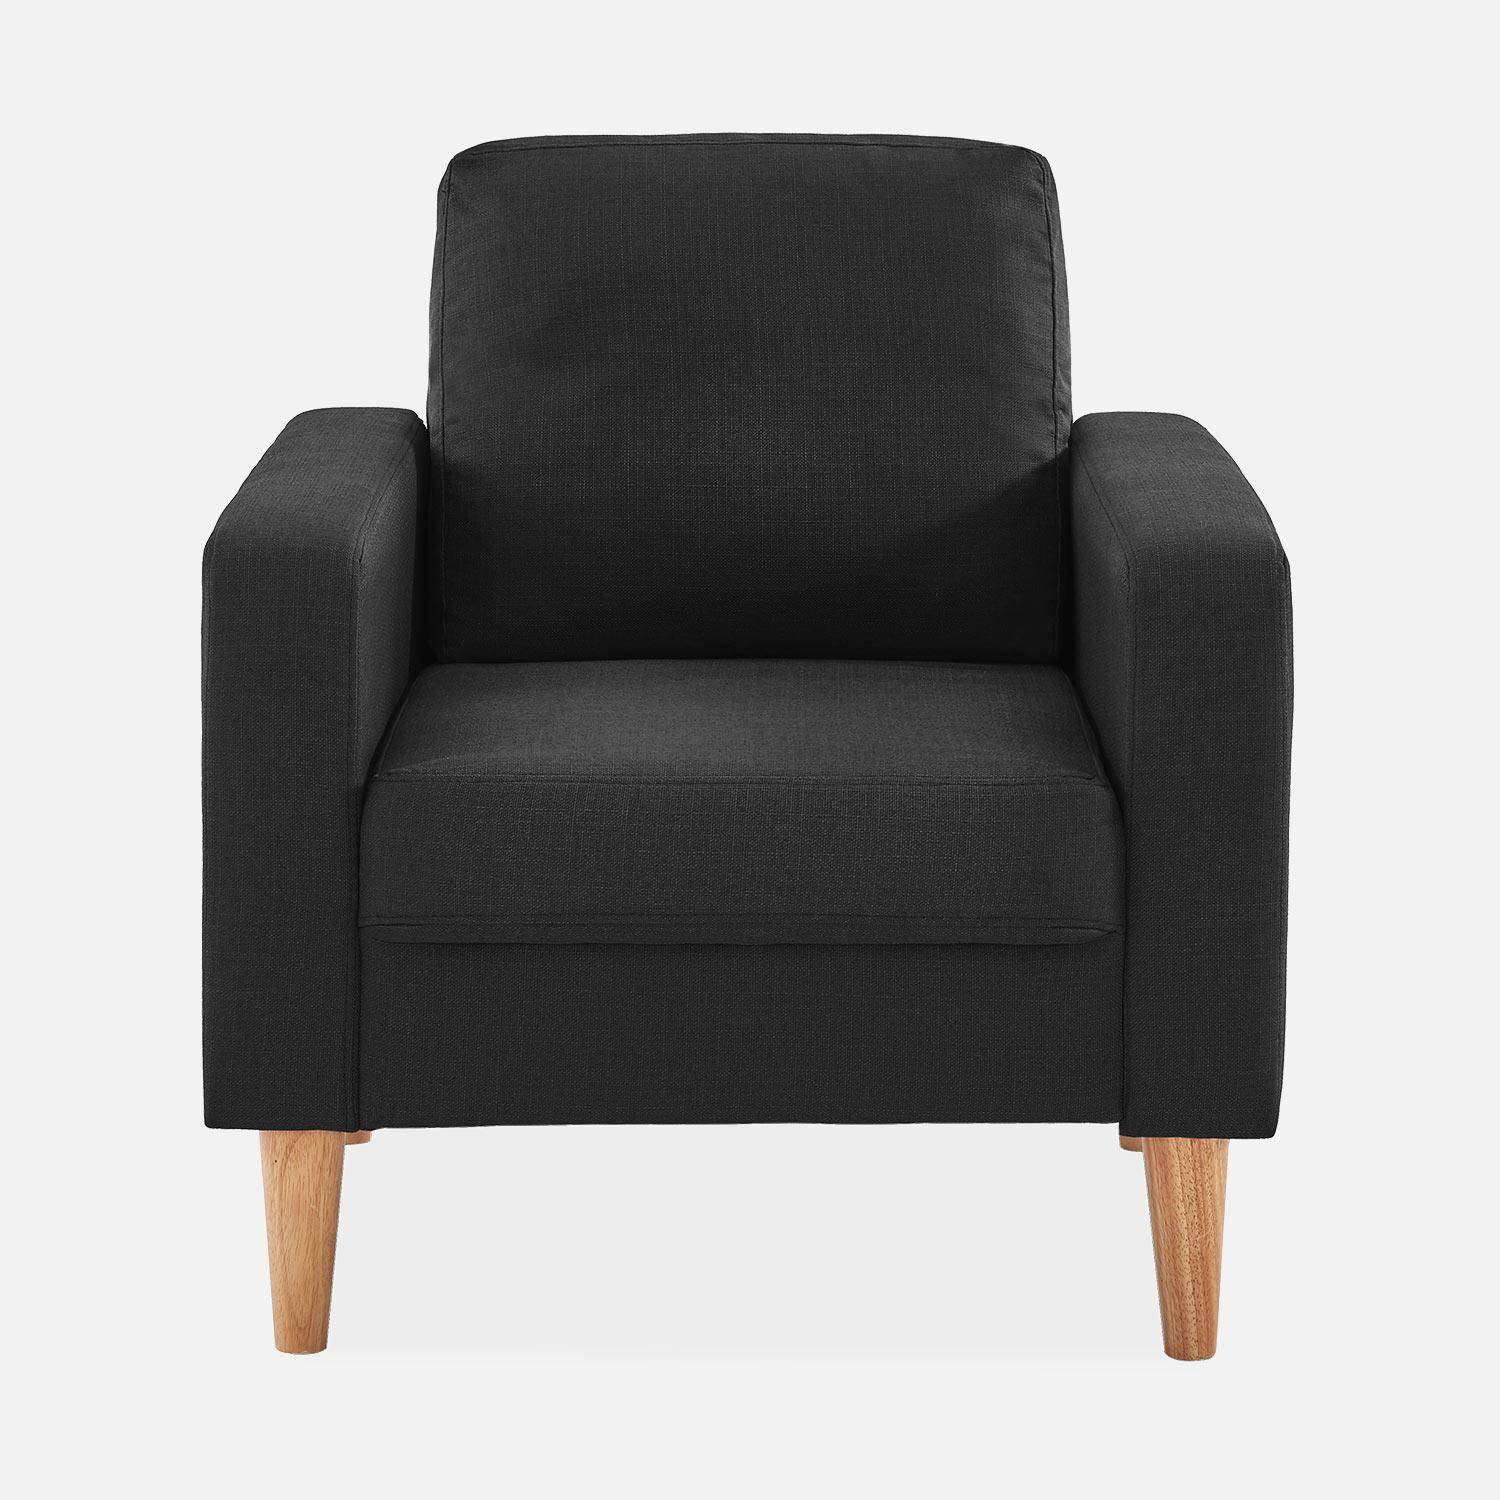 Sillón de tela gris oscuro - Bjorn - Sillón 1 plaza fijo recto patas madera, sillón escandinavo   Photo3